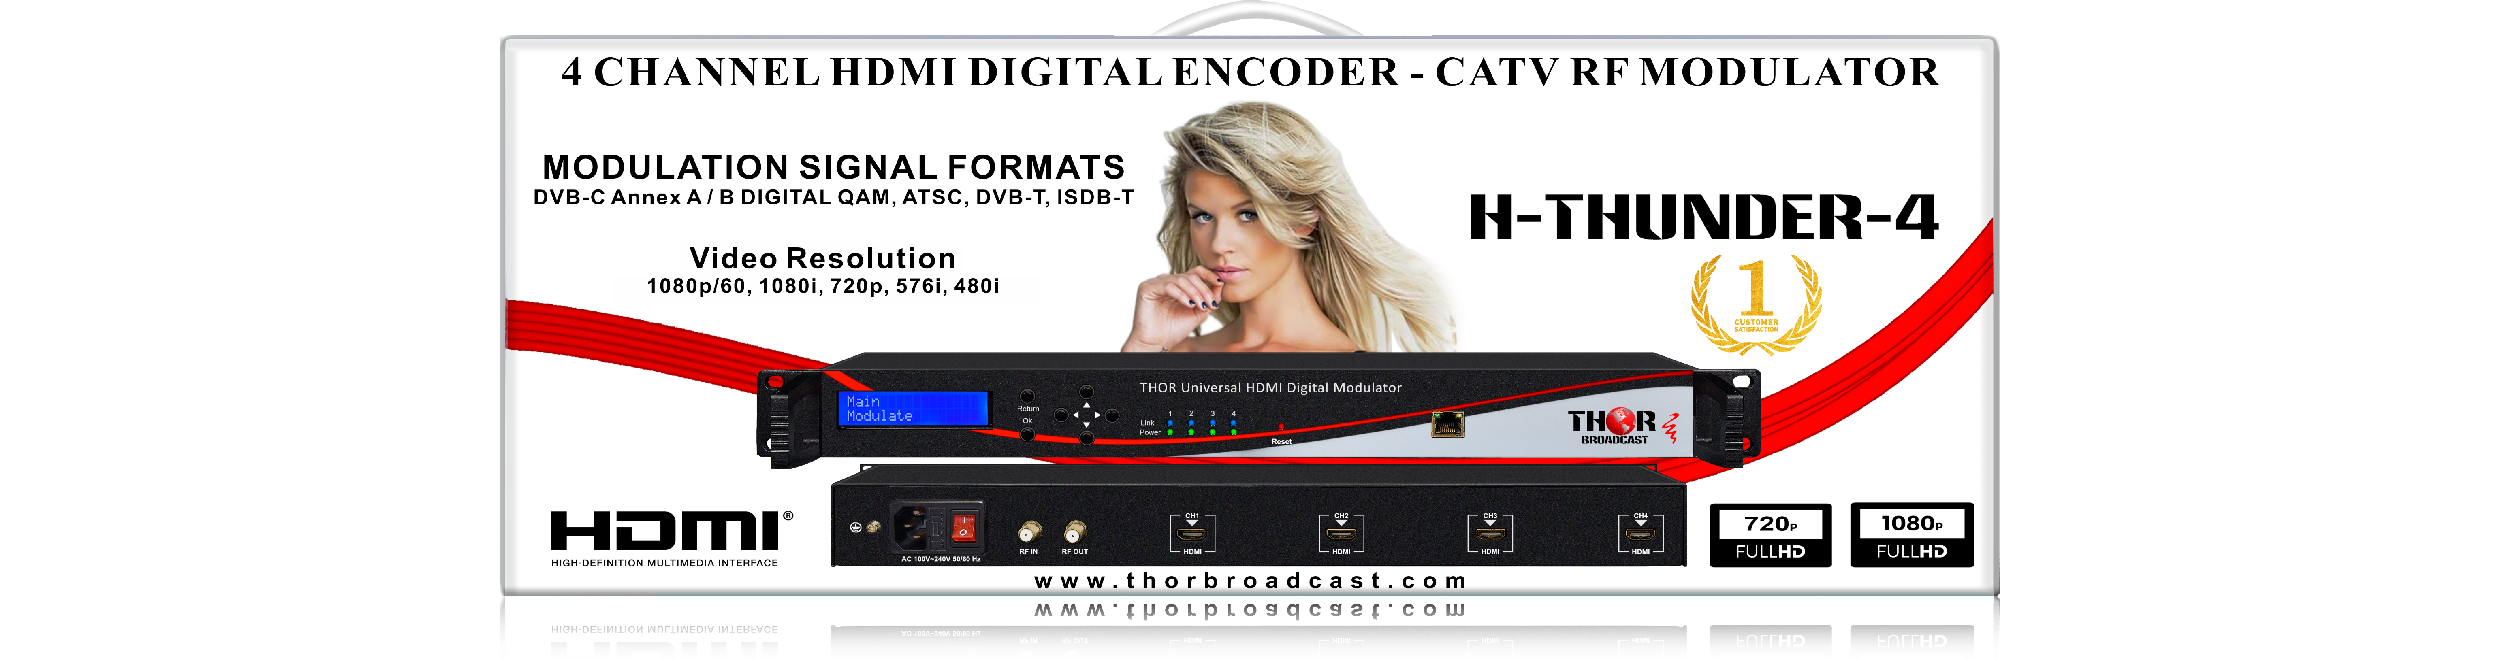  Ladieshow Modulador Hdmi RF, TM70 UHF TV Link Modulador AV a RF  Convertidor IR Extensor con pantalla de canal para su propio sistema CATV  local : Electrónica